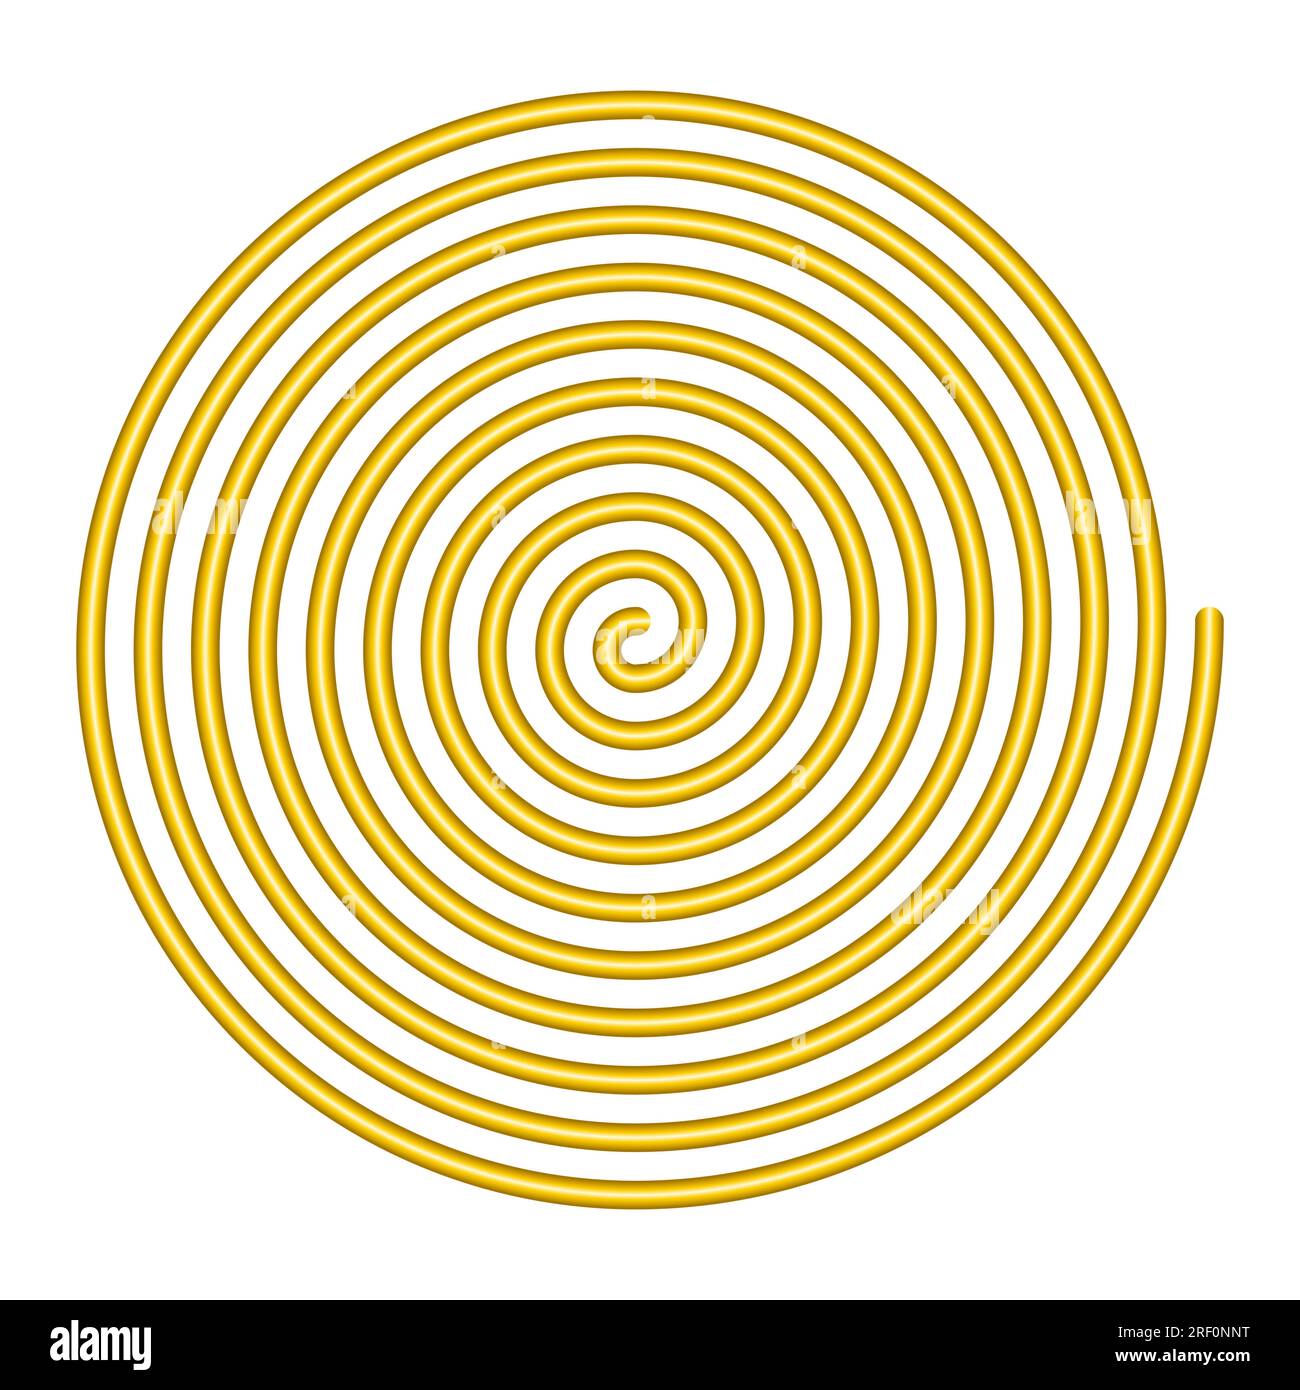 Große lineare Spirale. Goldfarbene Archimedean-Spirale mit zehn Umdrehungen eines Arms einer arithmetischen Spirale, die sich mit konstanter Winkelgeschwindigkeit dreht. Stockfoto